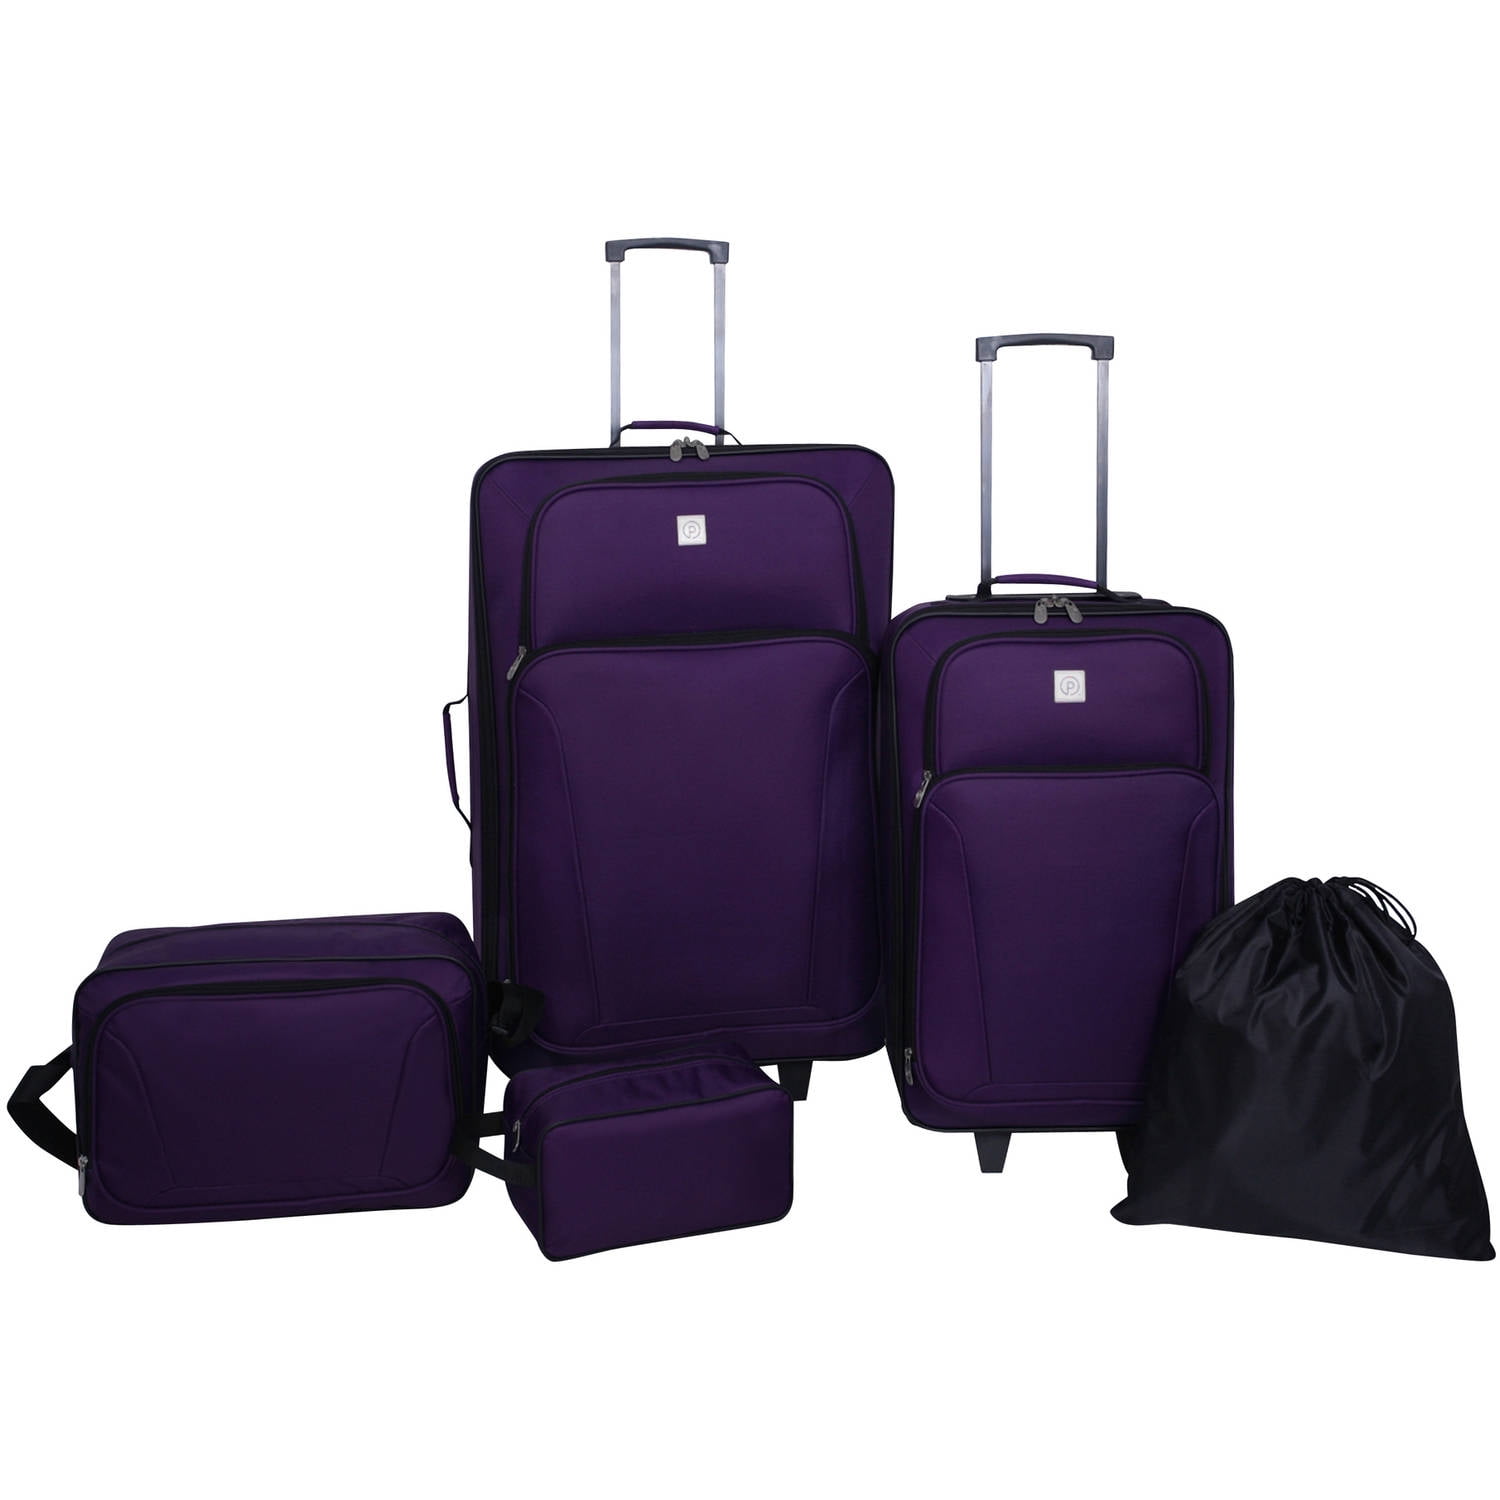 Protege Purple Luggage Set, 5 Piece Set includes 28